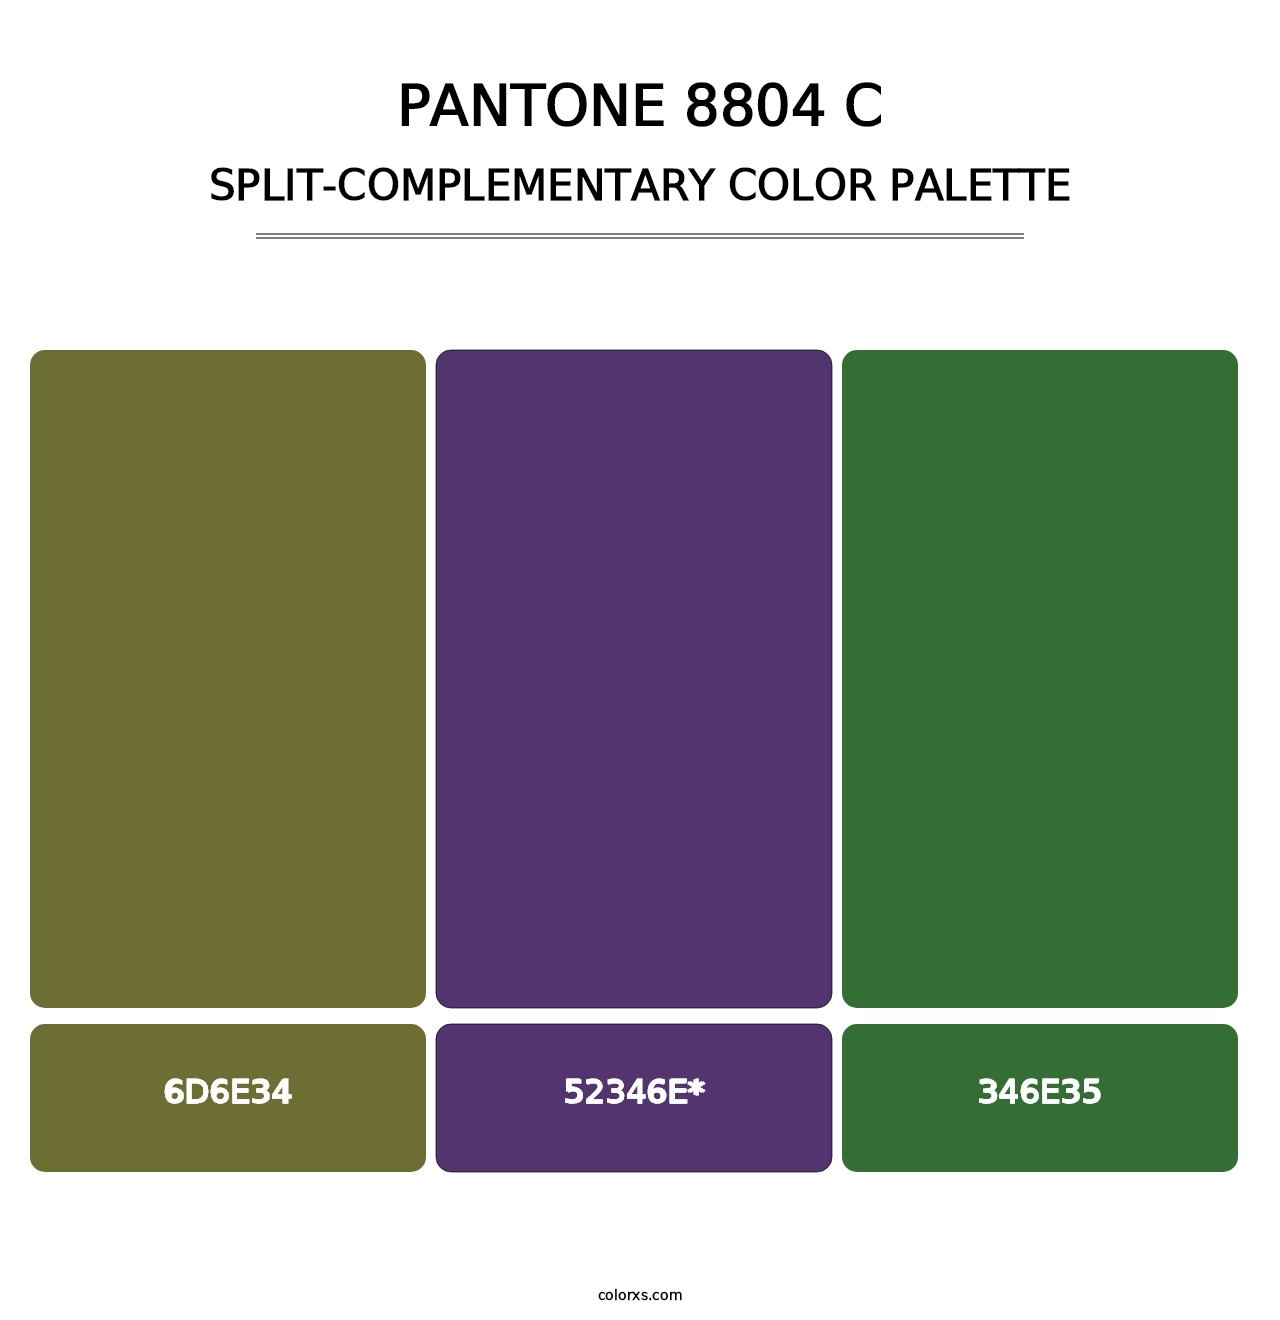 PANTONE 8804 C - Split-Complementary Color Palette